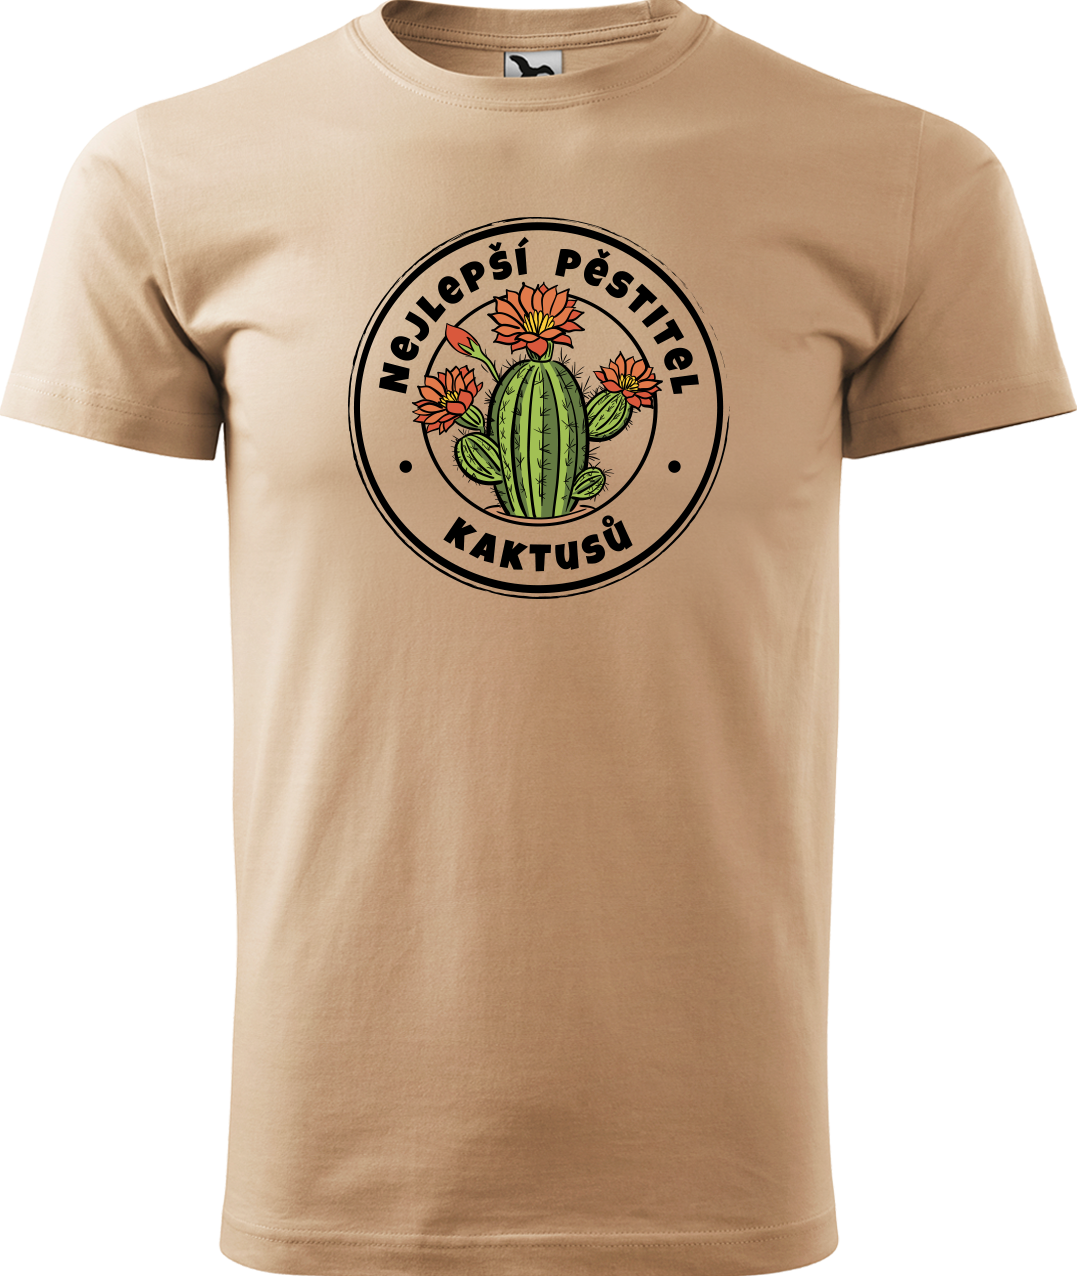 Tričko s kaktusem - Nejlepší pěstitel kaktusů Velikost: M, Barva: Písková (08)